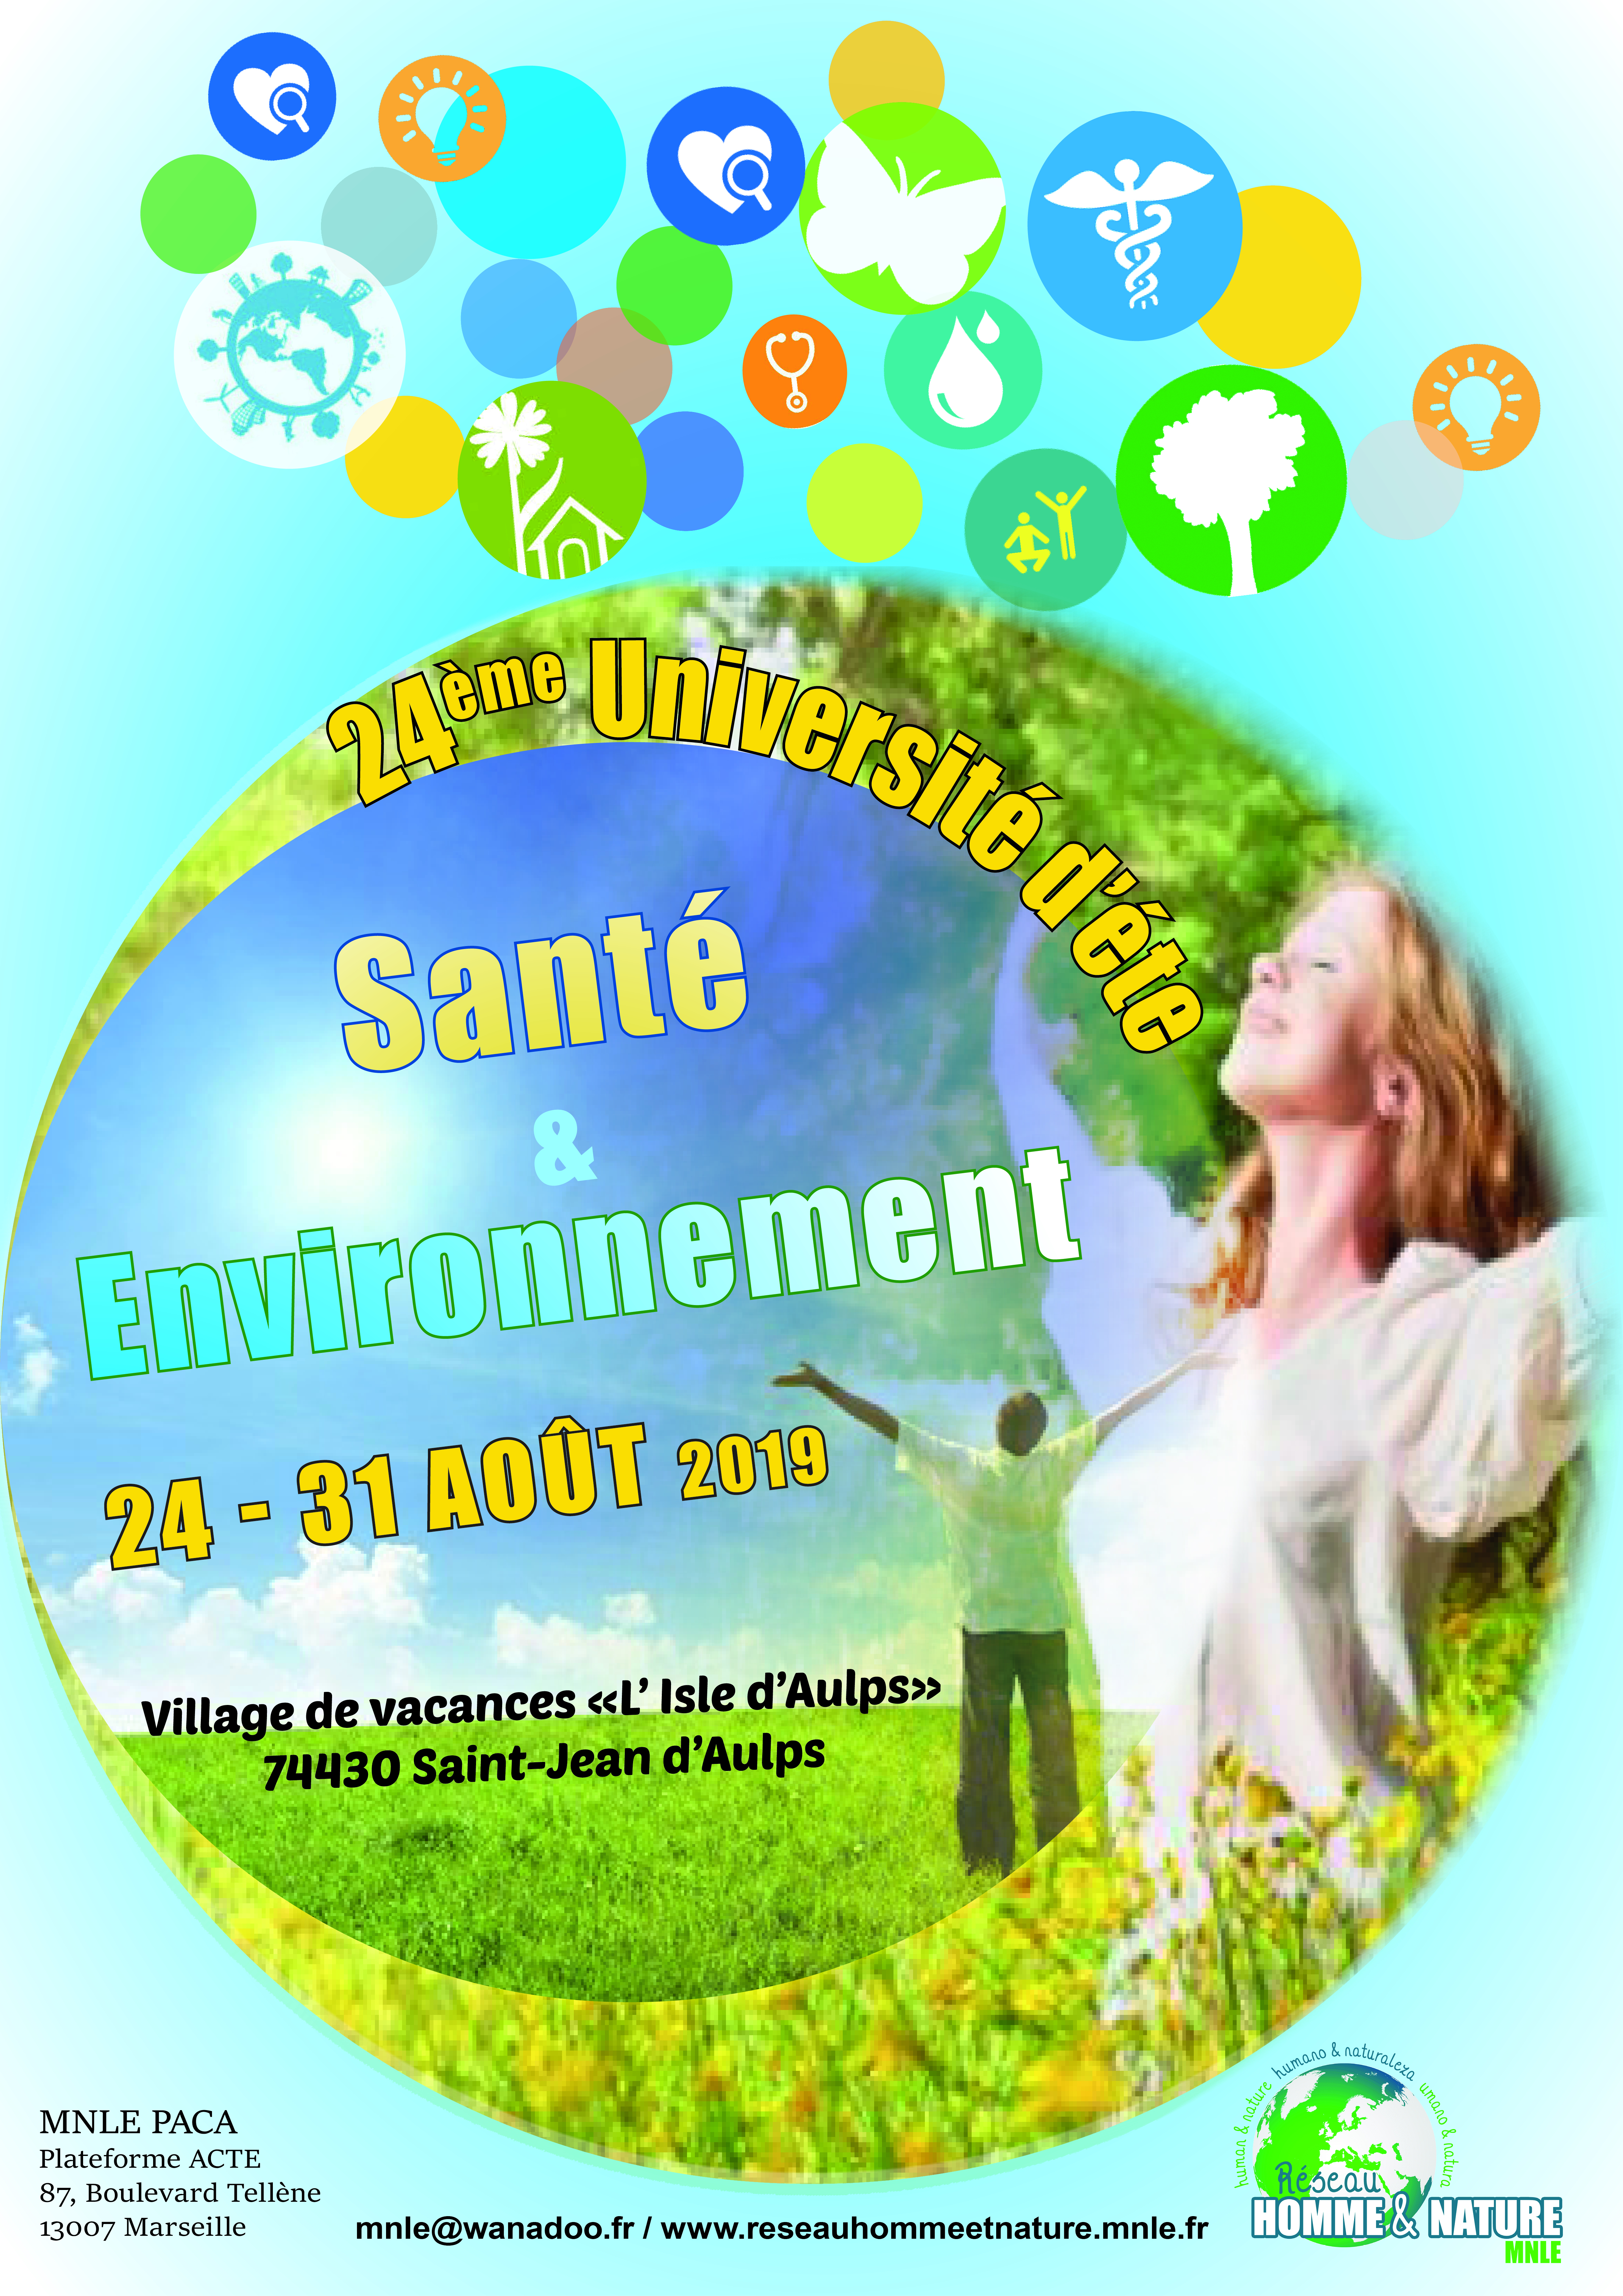 1er Annonce : XXIVe université d’été Santé & Environnement à vos agendas !